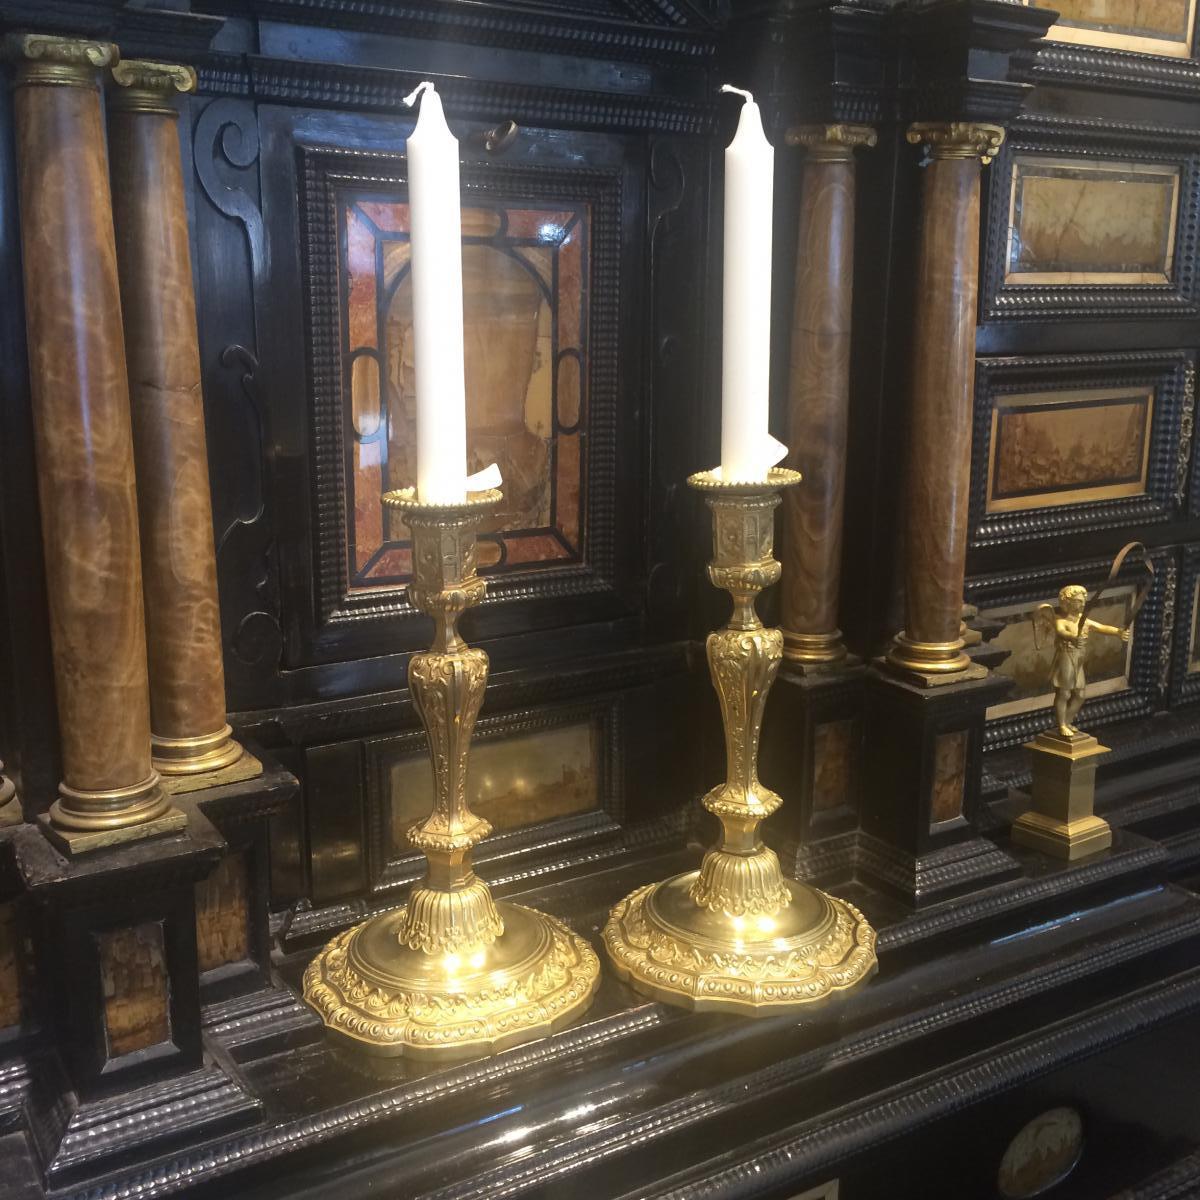 Wir freuen uns, Ihnen dieses wunderbare Paar vergoldeter Bronze-Kerzenhalter im Stil Ludwigs XV. aus der Zeit Napoleons III. präsentieren zu können. Diese kunstvoll verzierten Kerzenhalter mit Motiven, die an den Louis XV-Stil erinnern, verleihen